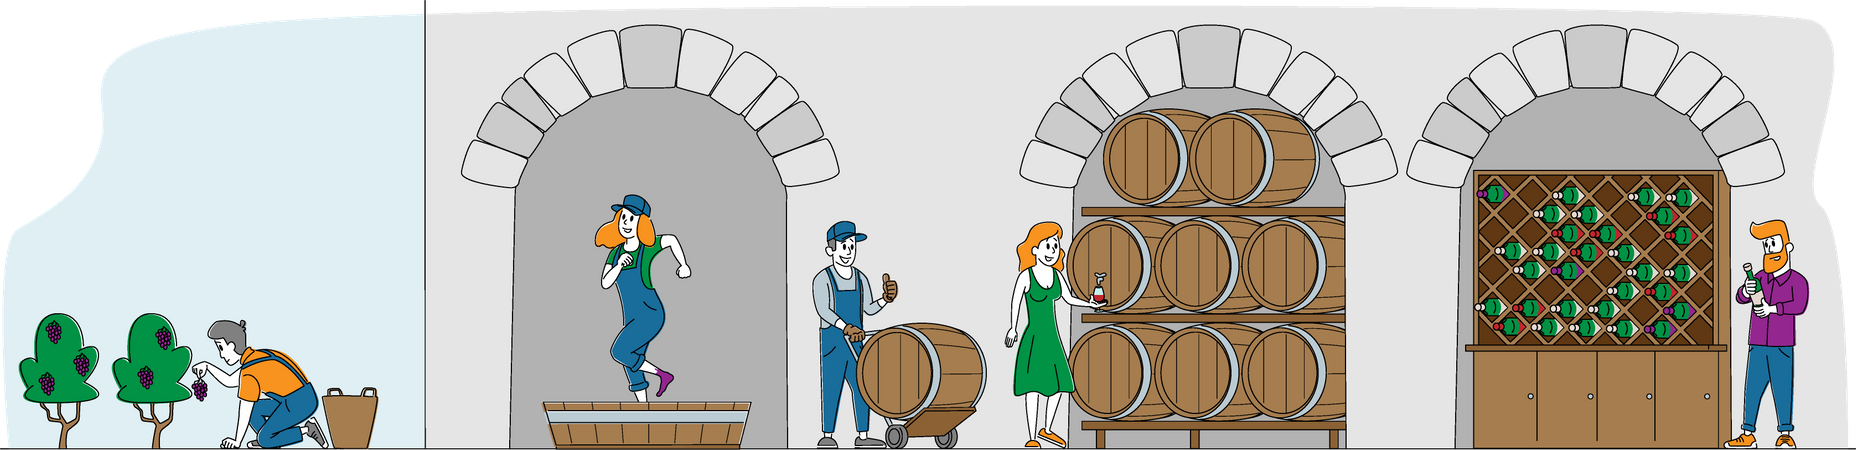 Produção de vinho e consumo de vinho  Ilustração